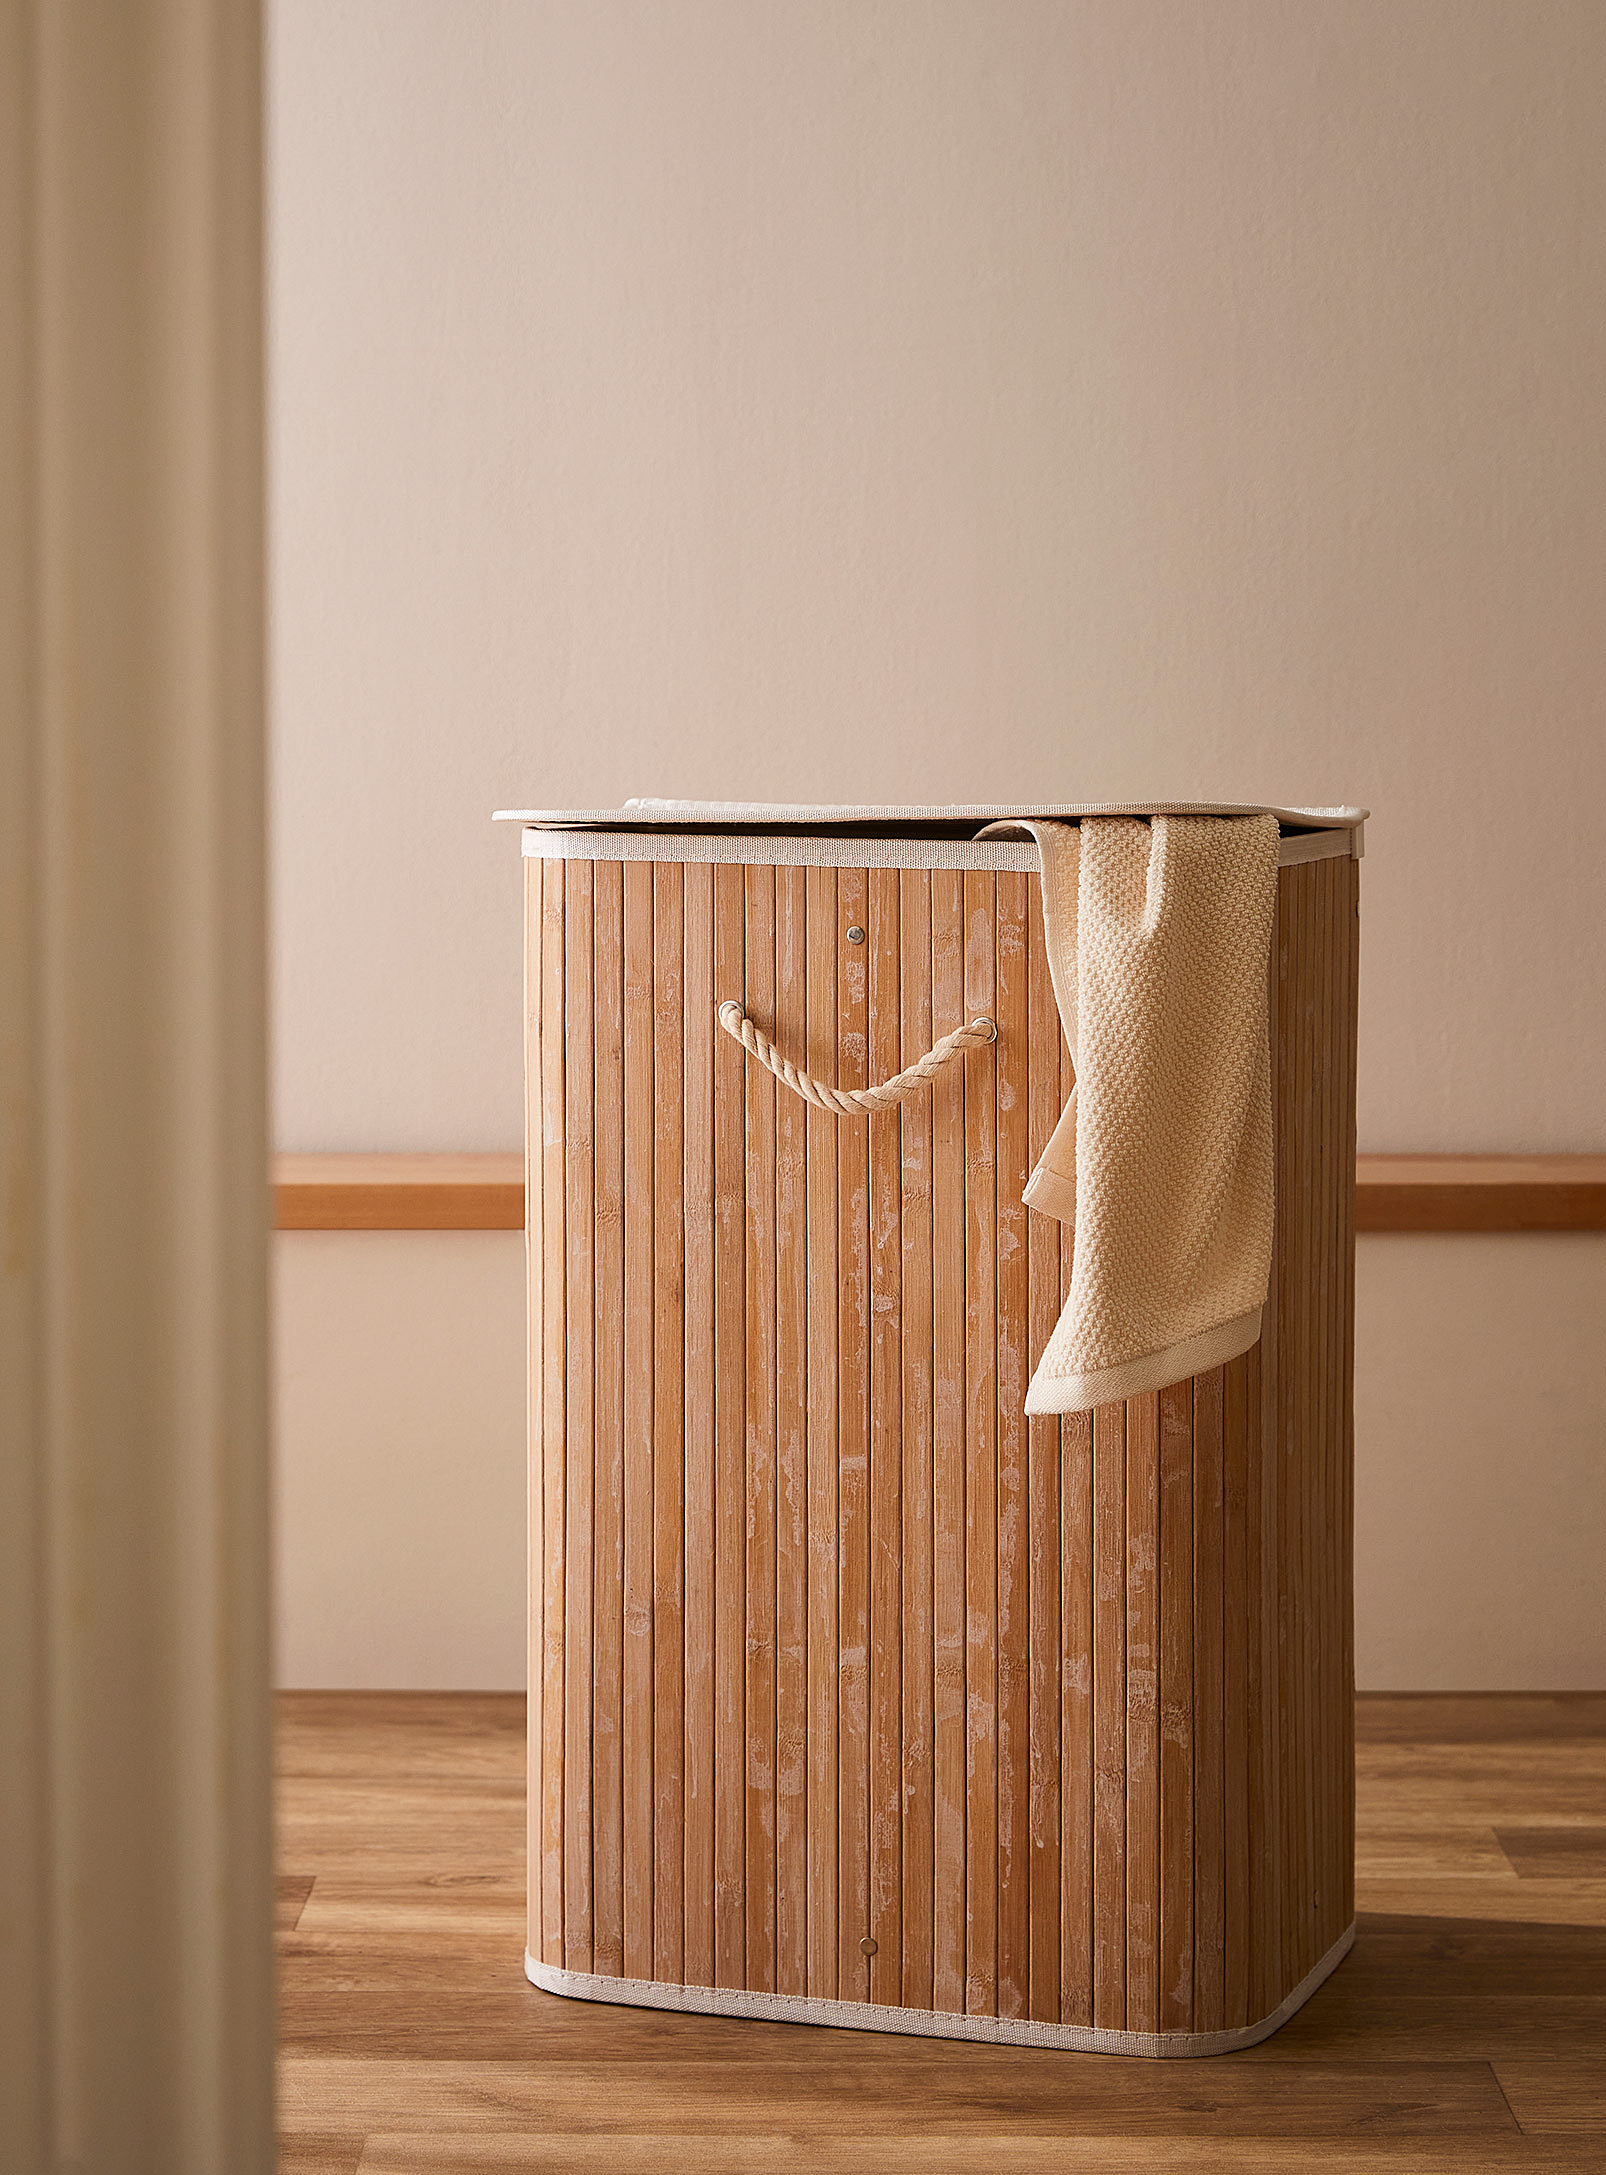 Simons Maison - Le panier à linge rectangulaire en bambou